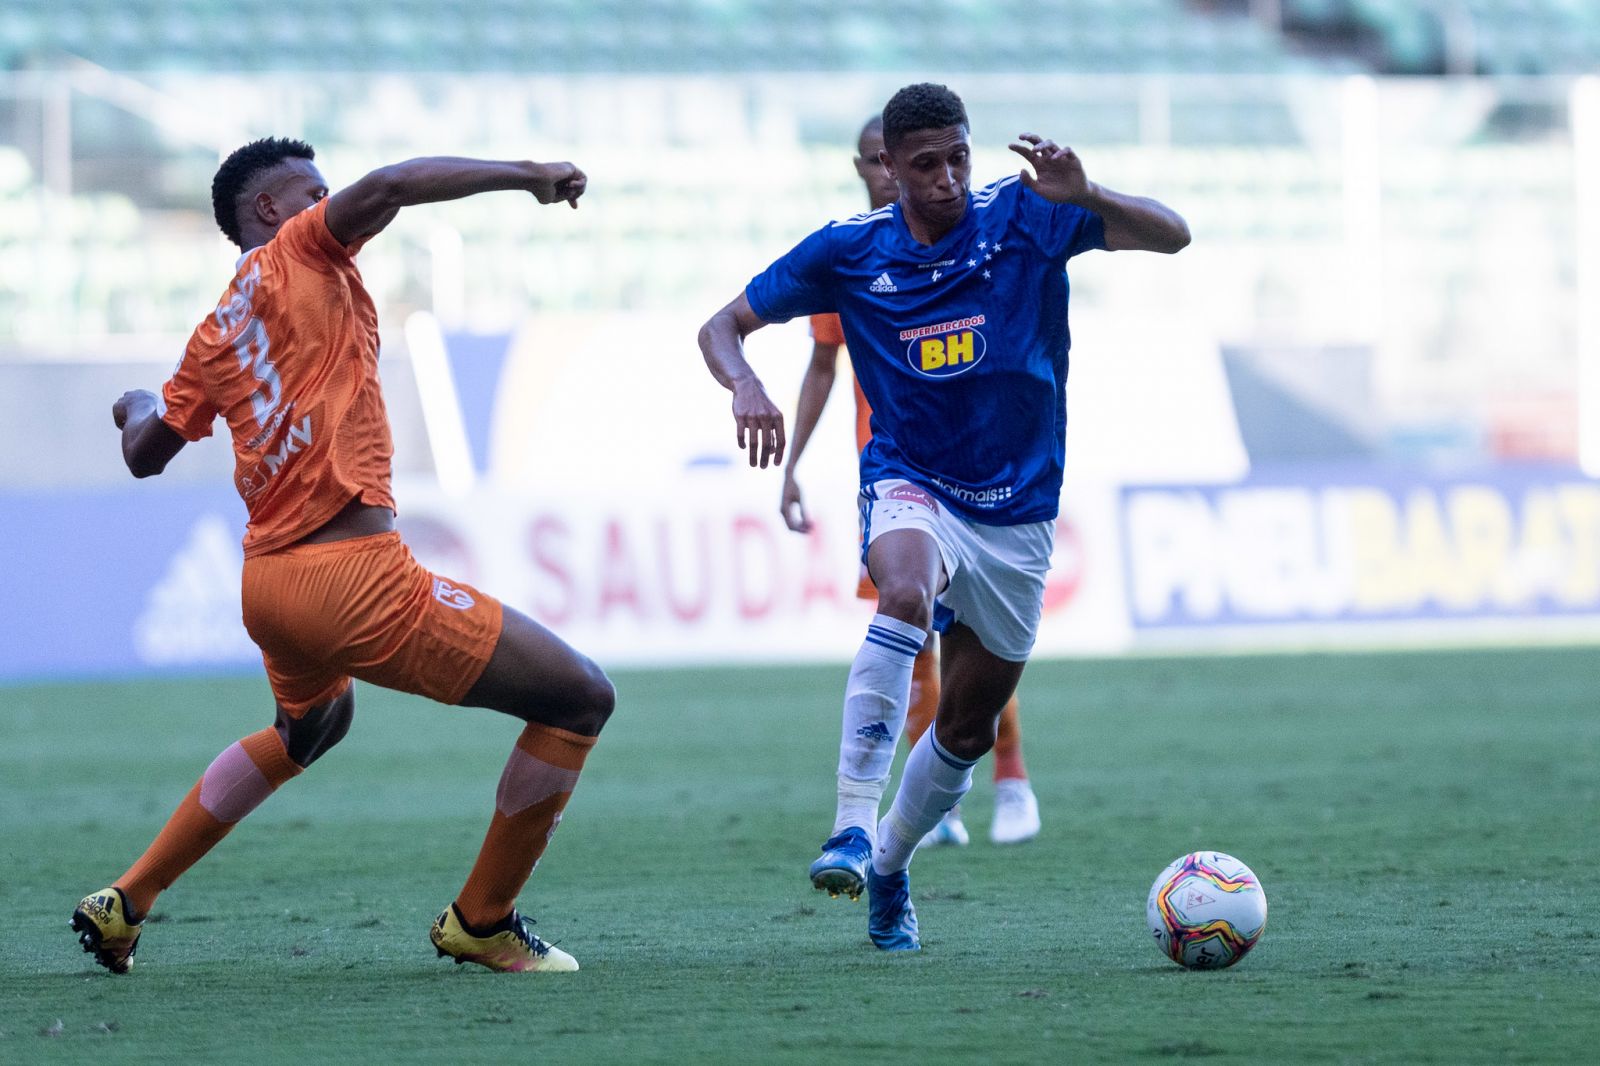 Jogando na Arena Independência, Clube Cinco Estrelas é superado pelo Coimbra no Campeonato Mineiro